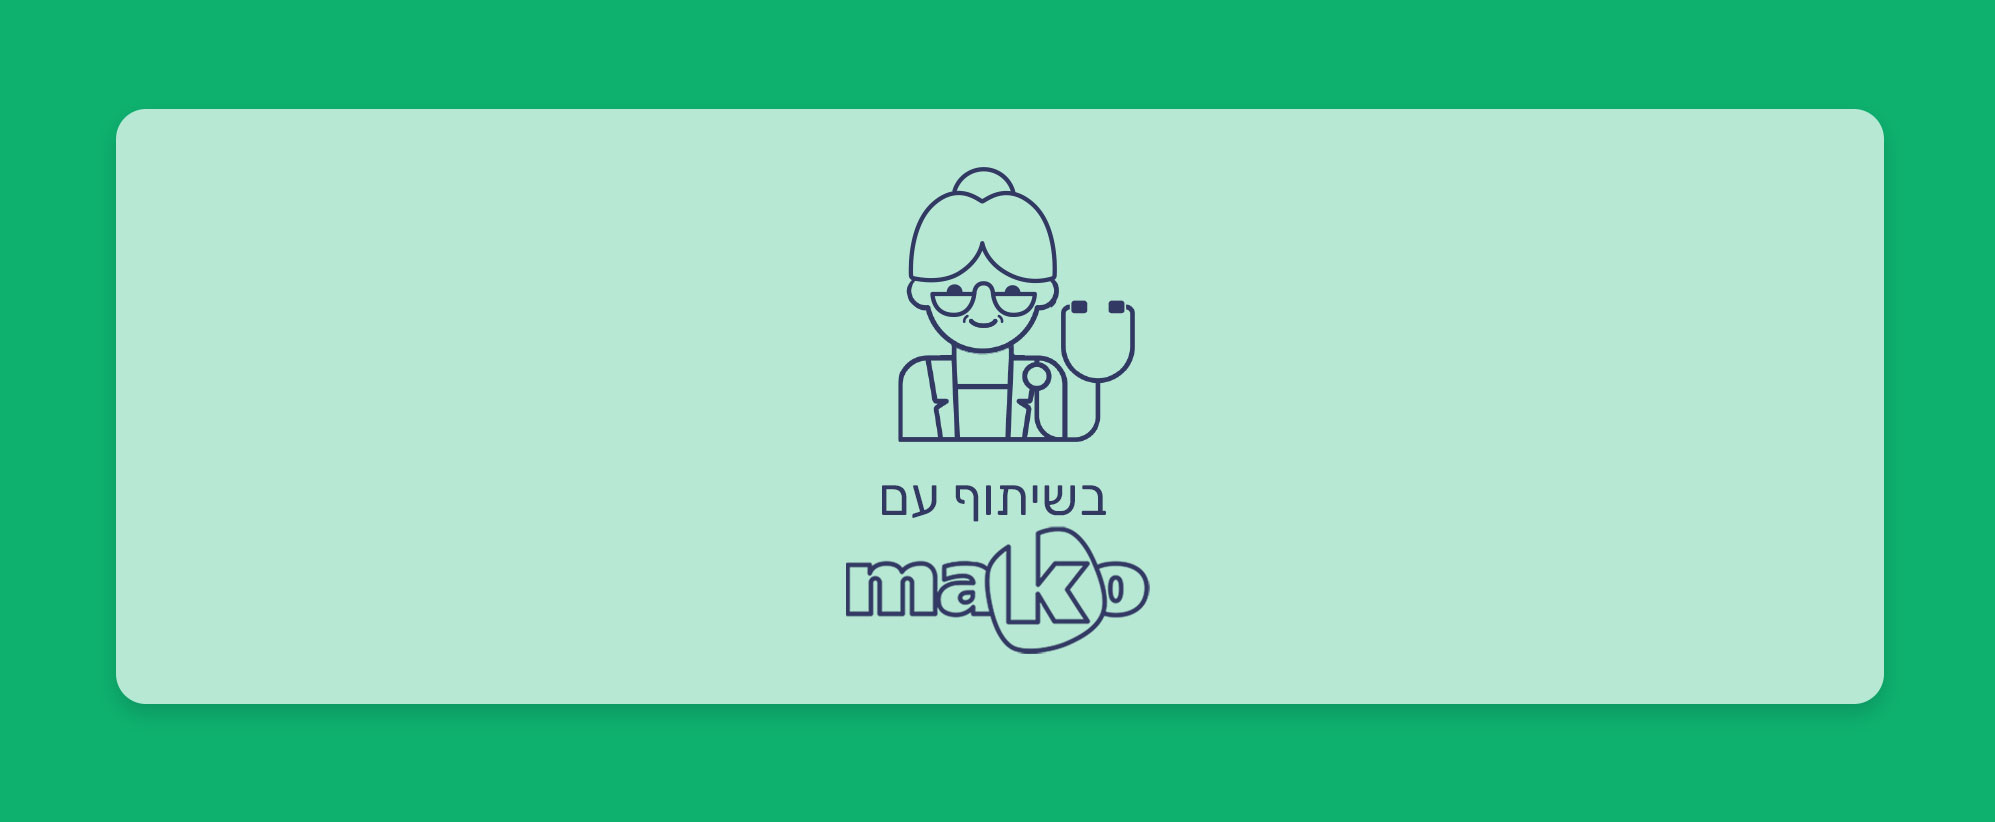 מטופלי הגיל השלישי בישראל: האוכלוסיה עם אחוזי הגידול הכי גבוהים